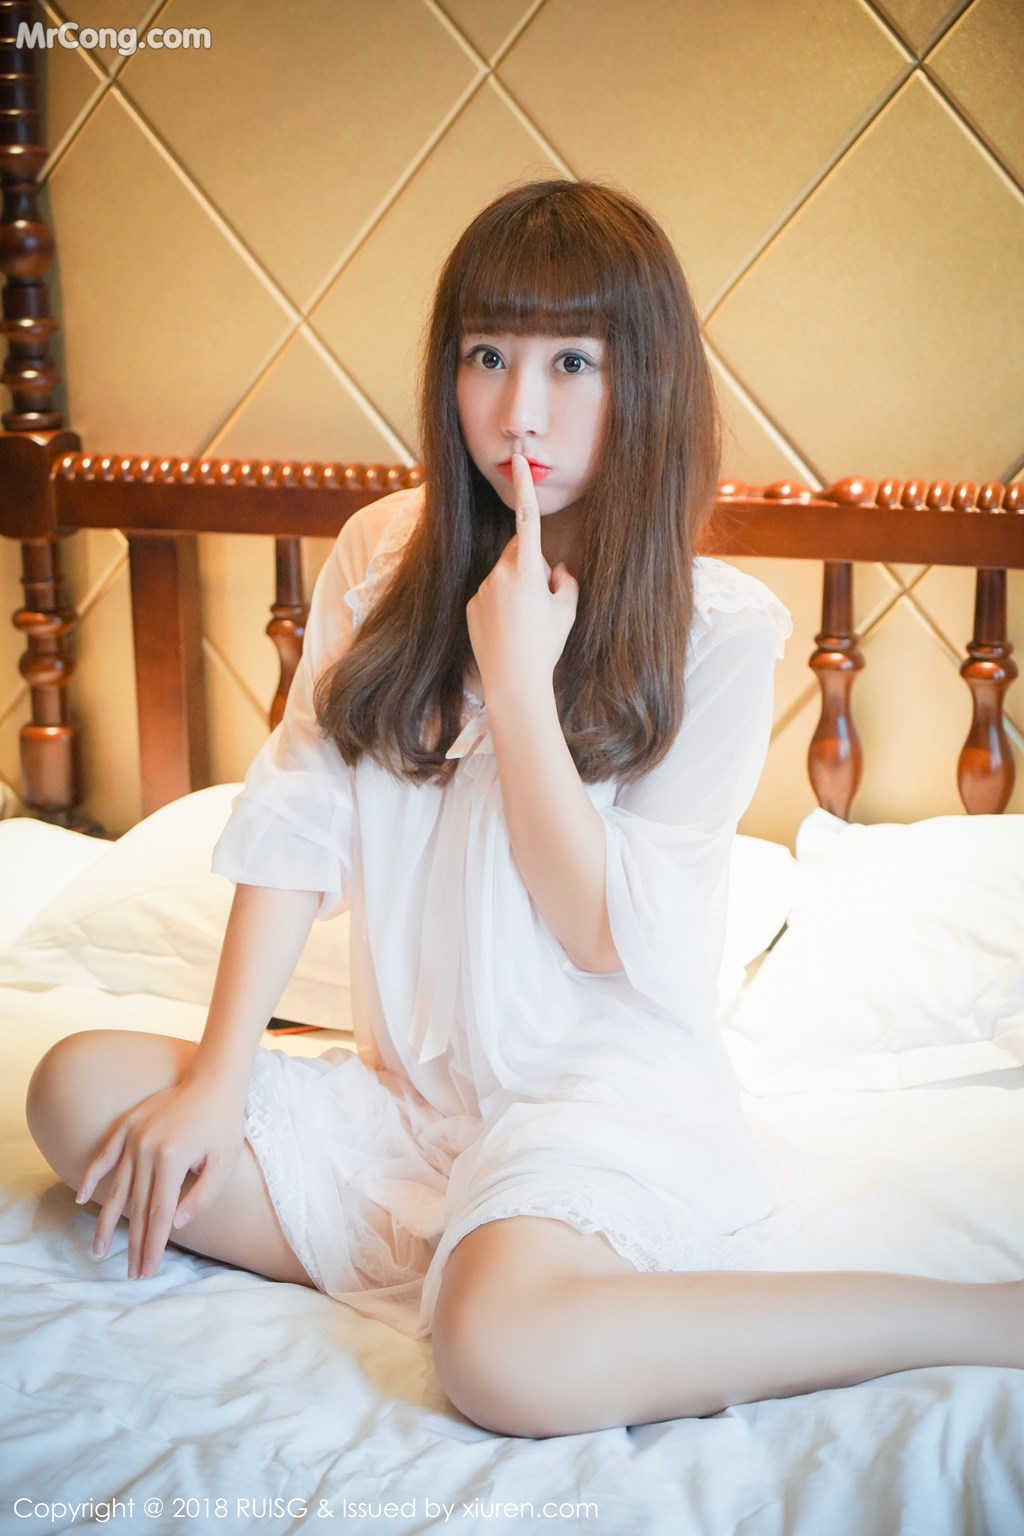 RuiSG Vol.043: Model Xia Xiao Xiao (夏 笑笑 Summer) (45 photos)